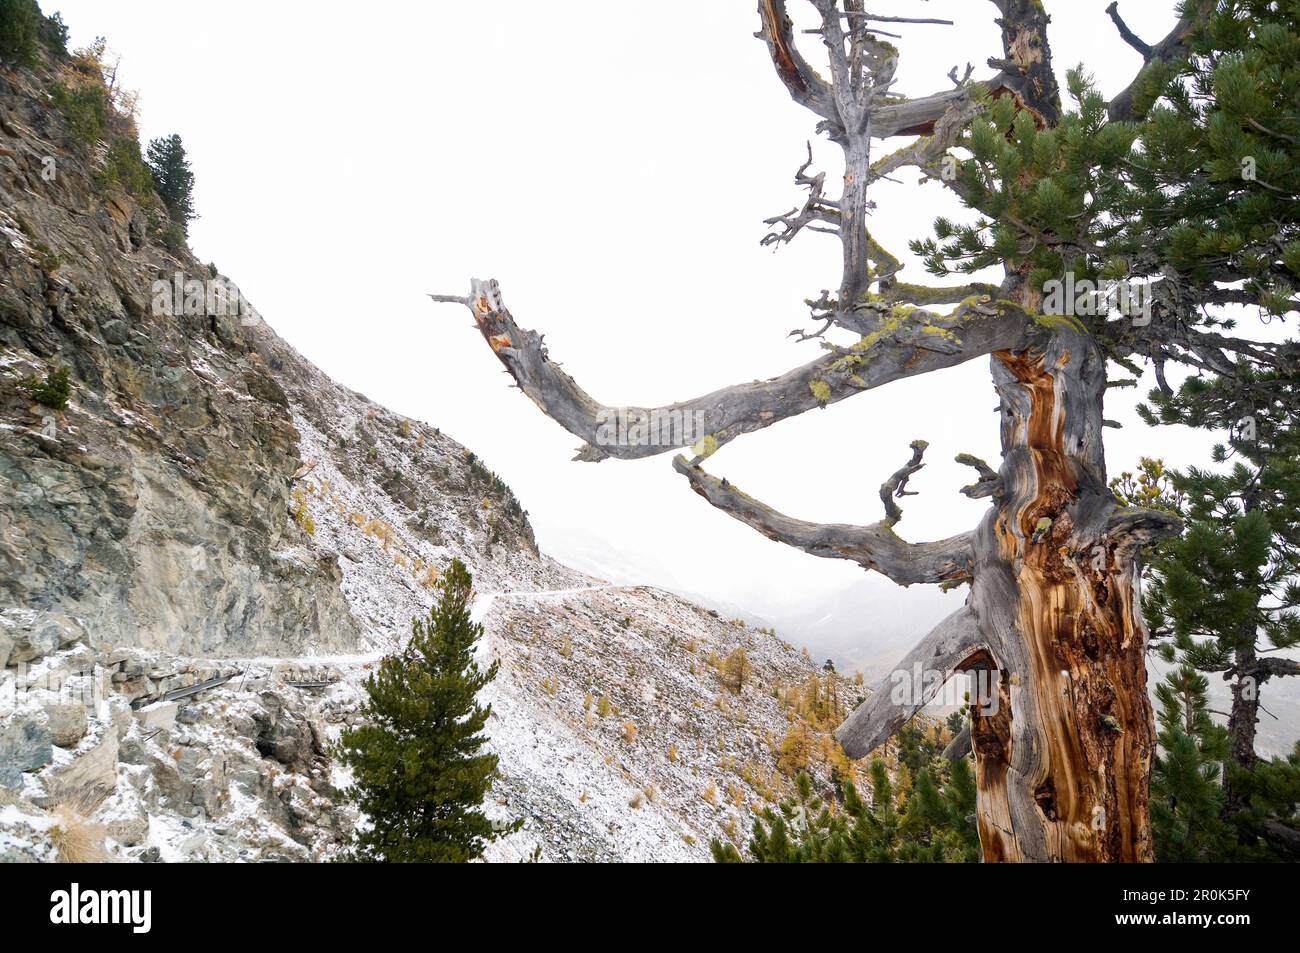 Swiss pine (Pinus cembra), Zermatt, Canton of Valais, Switzerland Stock Photo